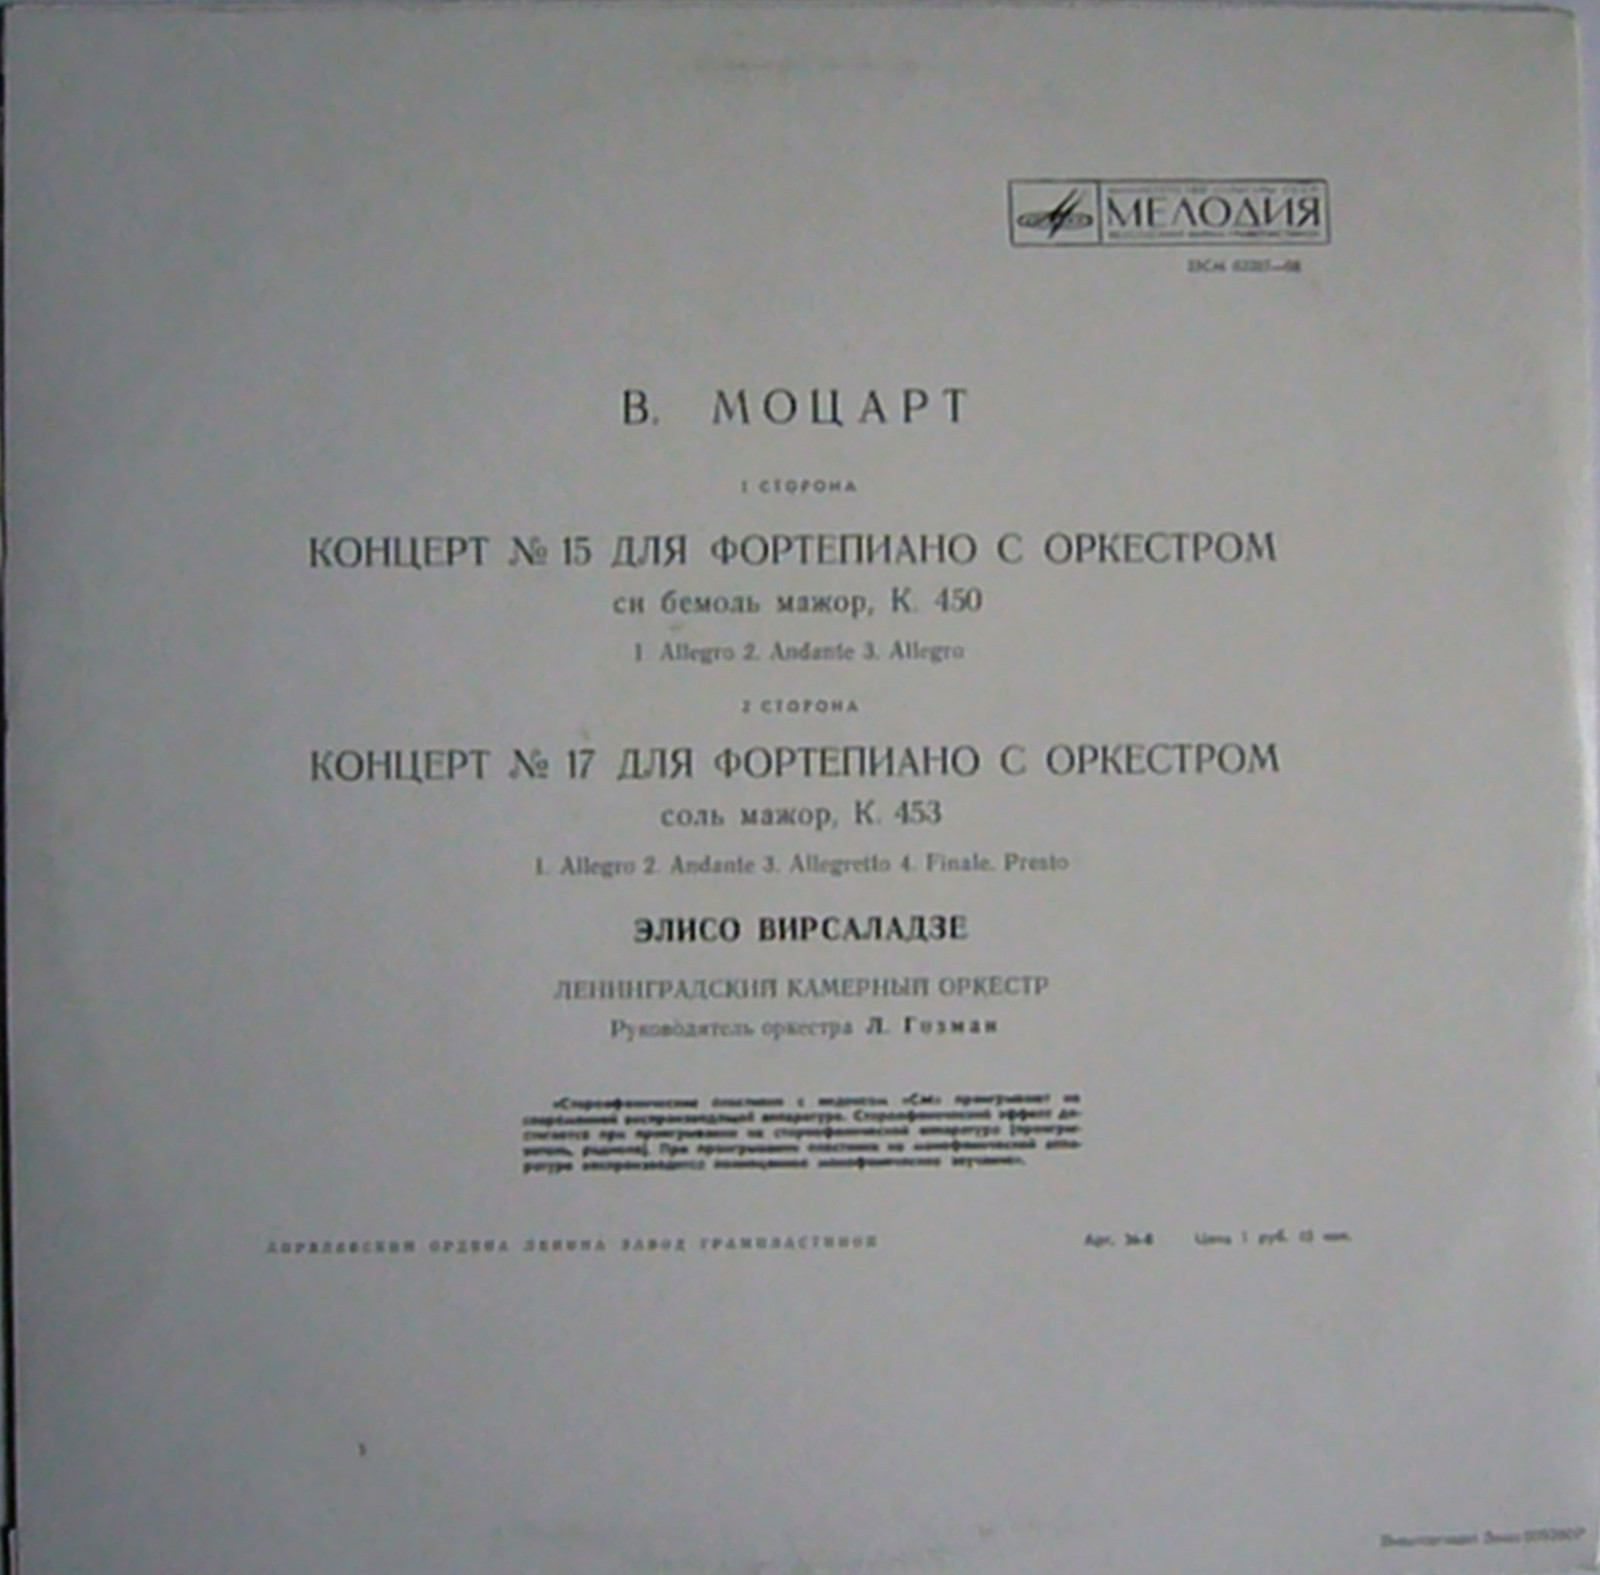 В. Моцарт: Концерты №№ 15, 17 для фортепиано с оркестром (Элисо Вирсаладзе)